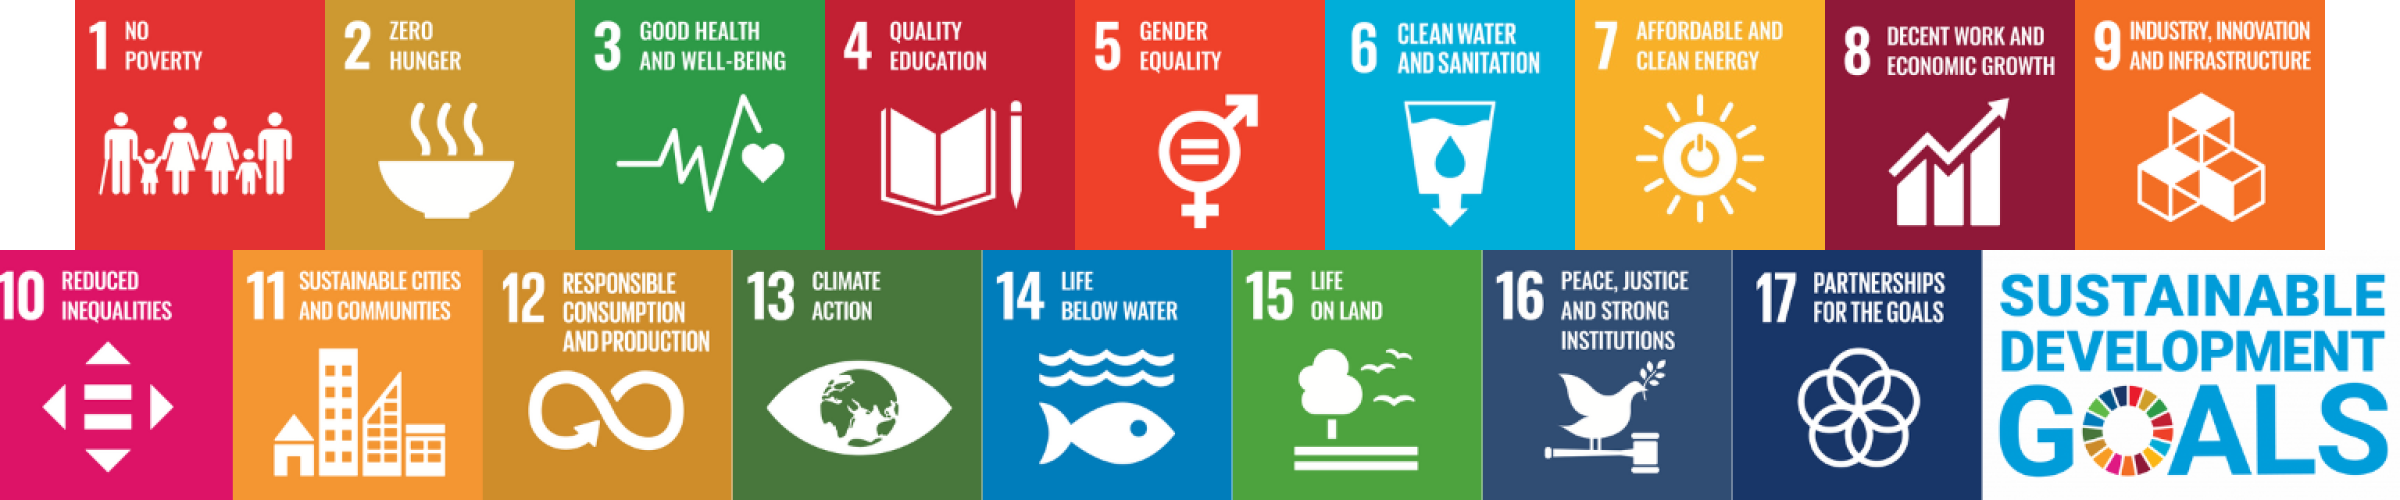 The UN’s SDGs